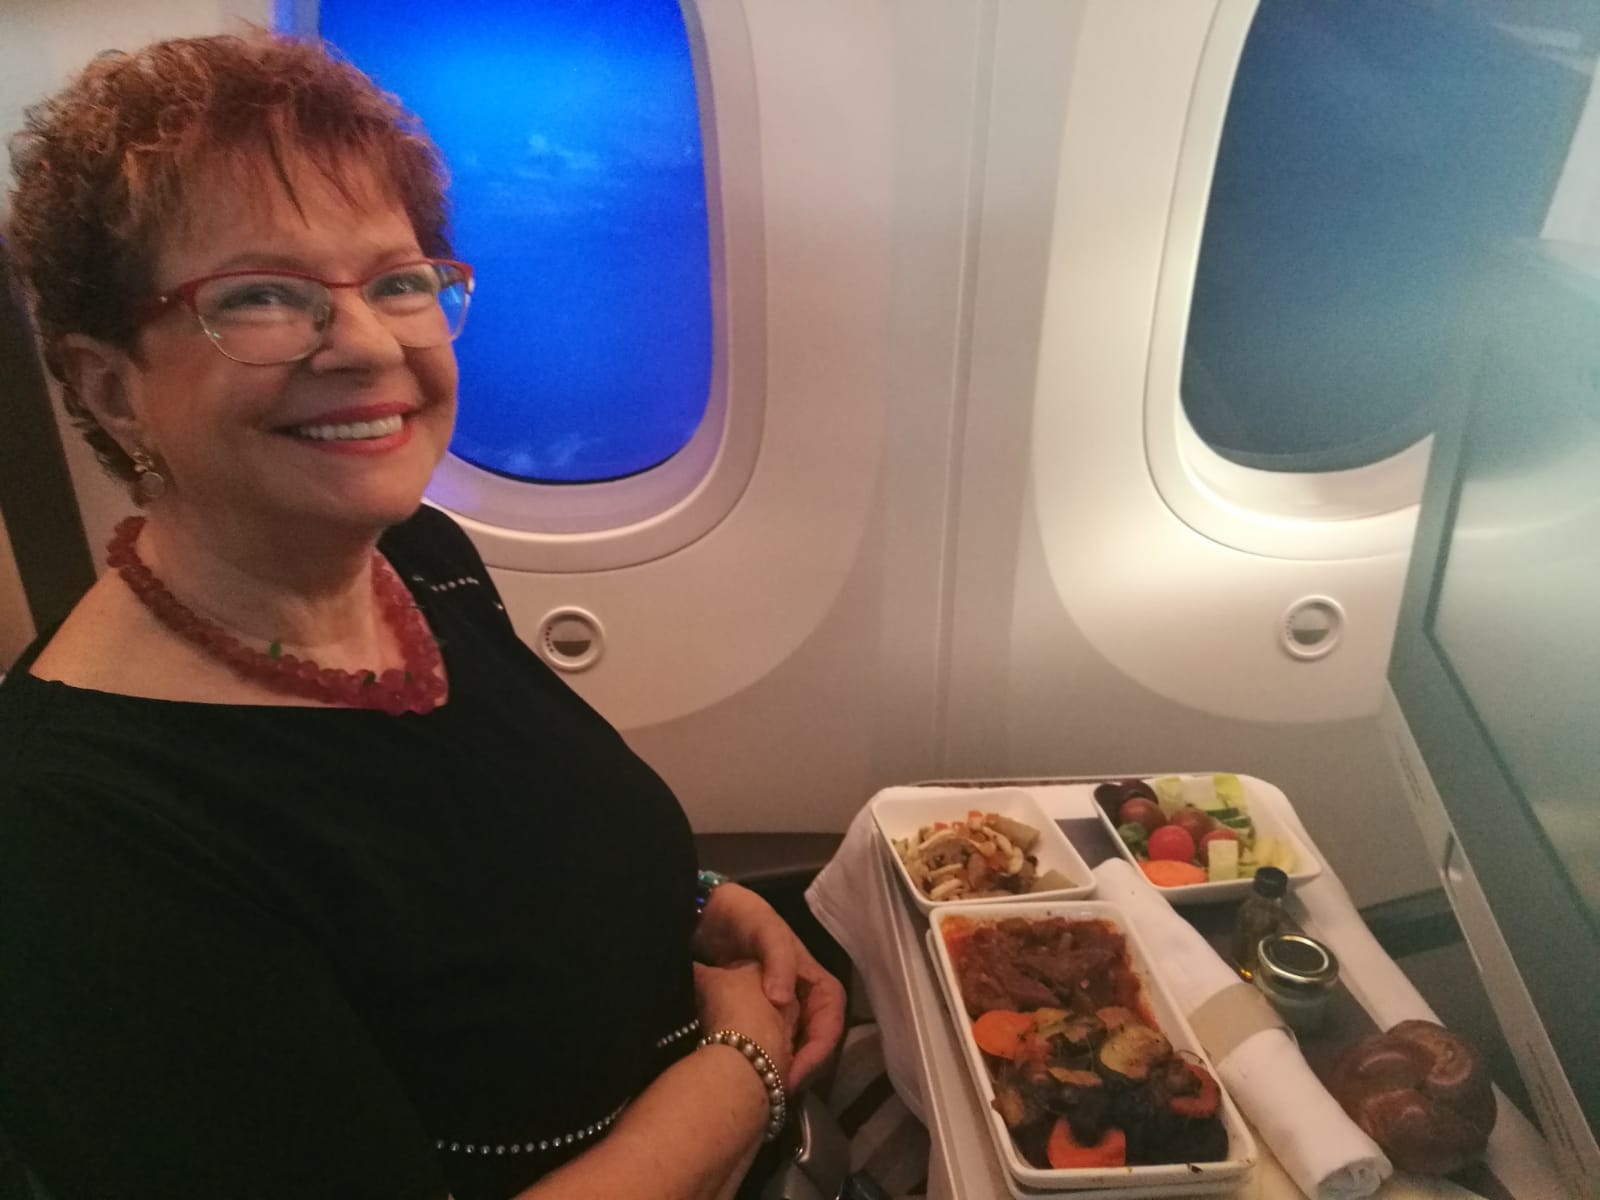 תמונה שנשלחה ע"י עירית רוזנבלום ממטוס אל על בדרכו לפריס באמצעות ה- WIFI. צילום IAS